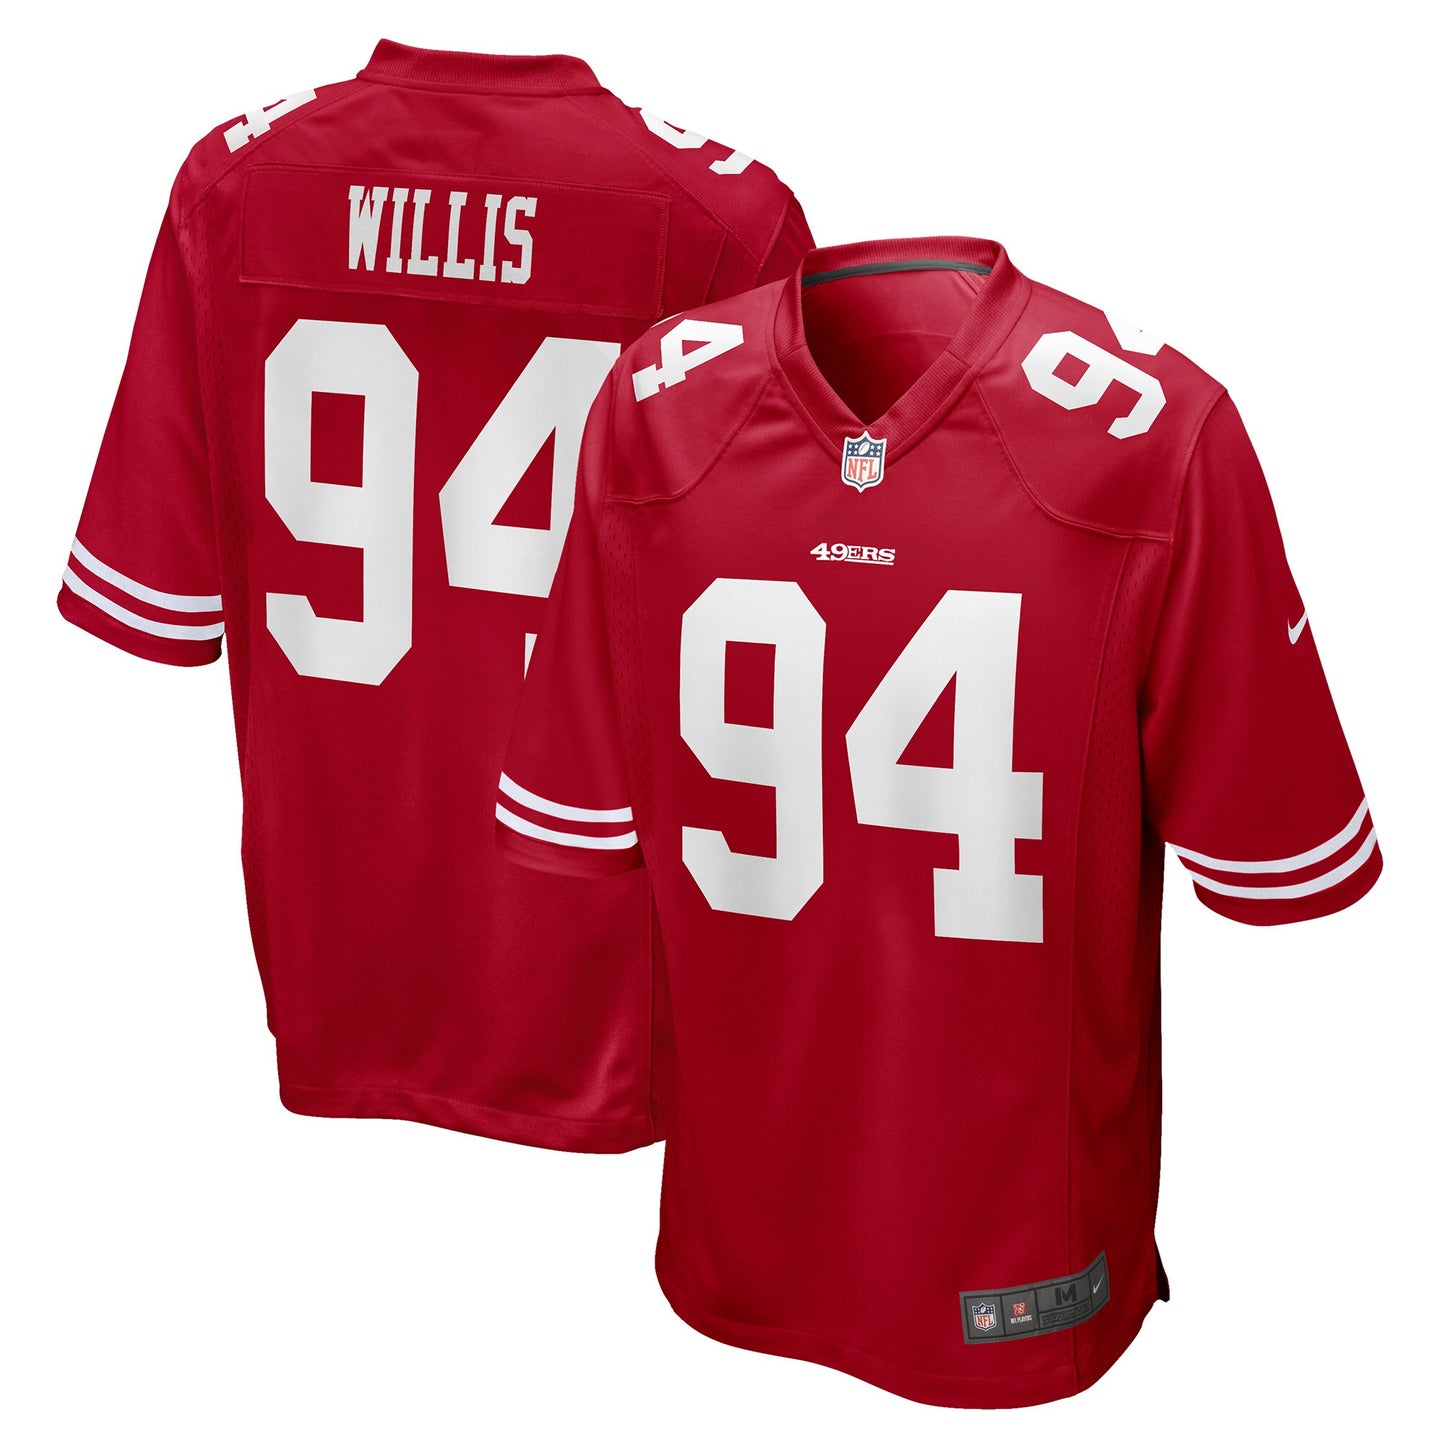 Jordans Willis San Francisco 49ers Nike Game Player Jersey - Scarlet